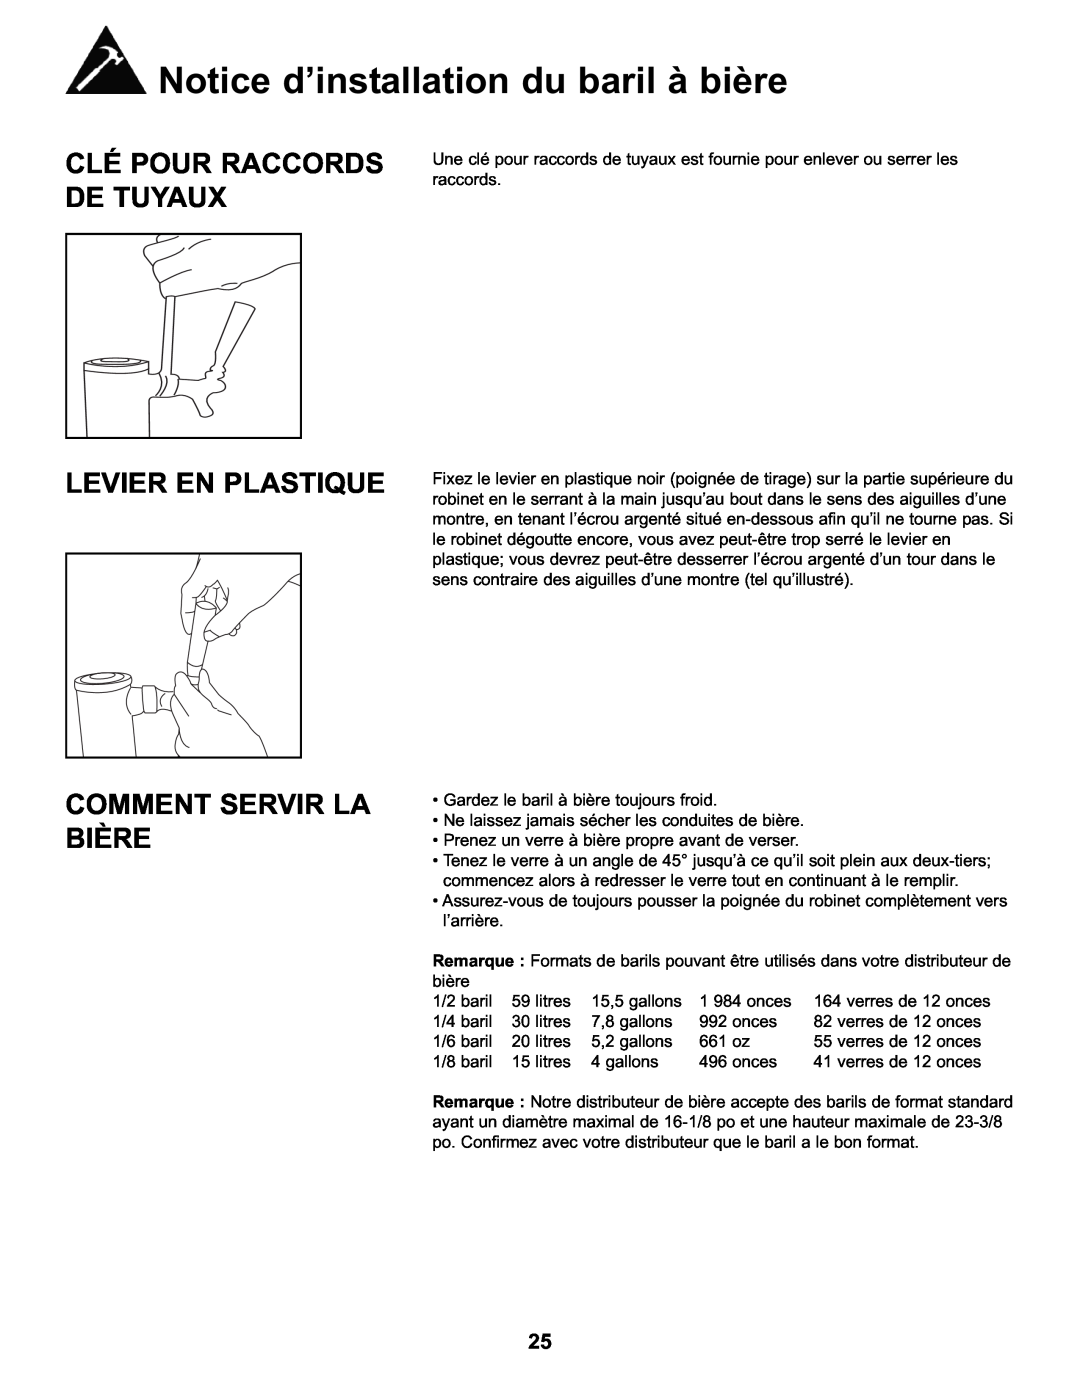 Danby DKC146SLDB manual Clé Pour Raccords De Tuyaux, Levier En Plastique Comment Servir La Bière, verres de 12 onces 